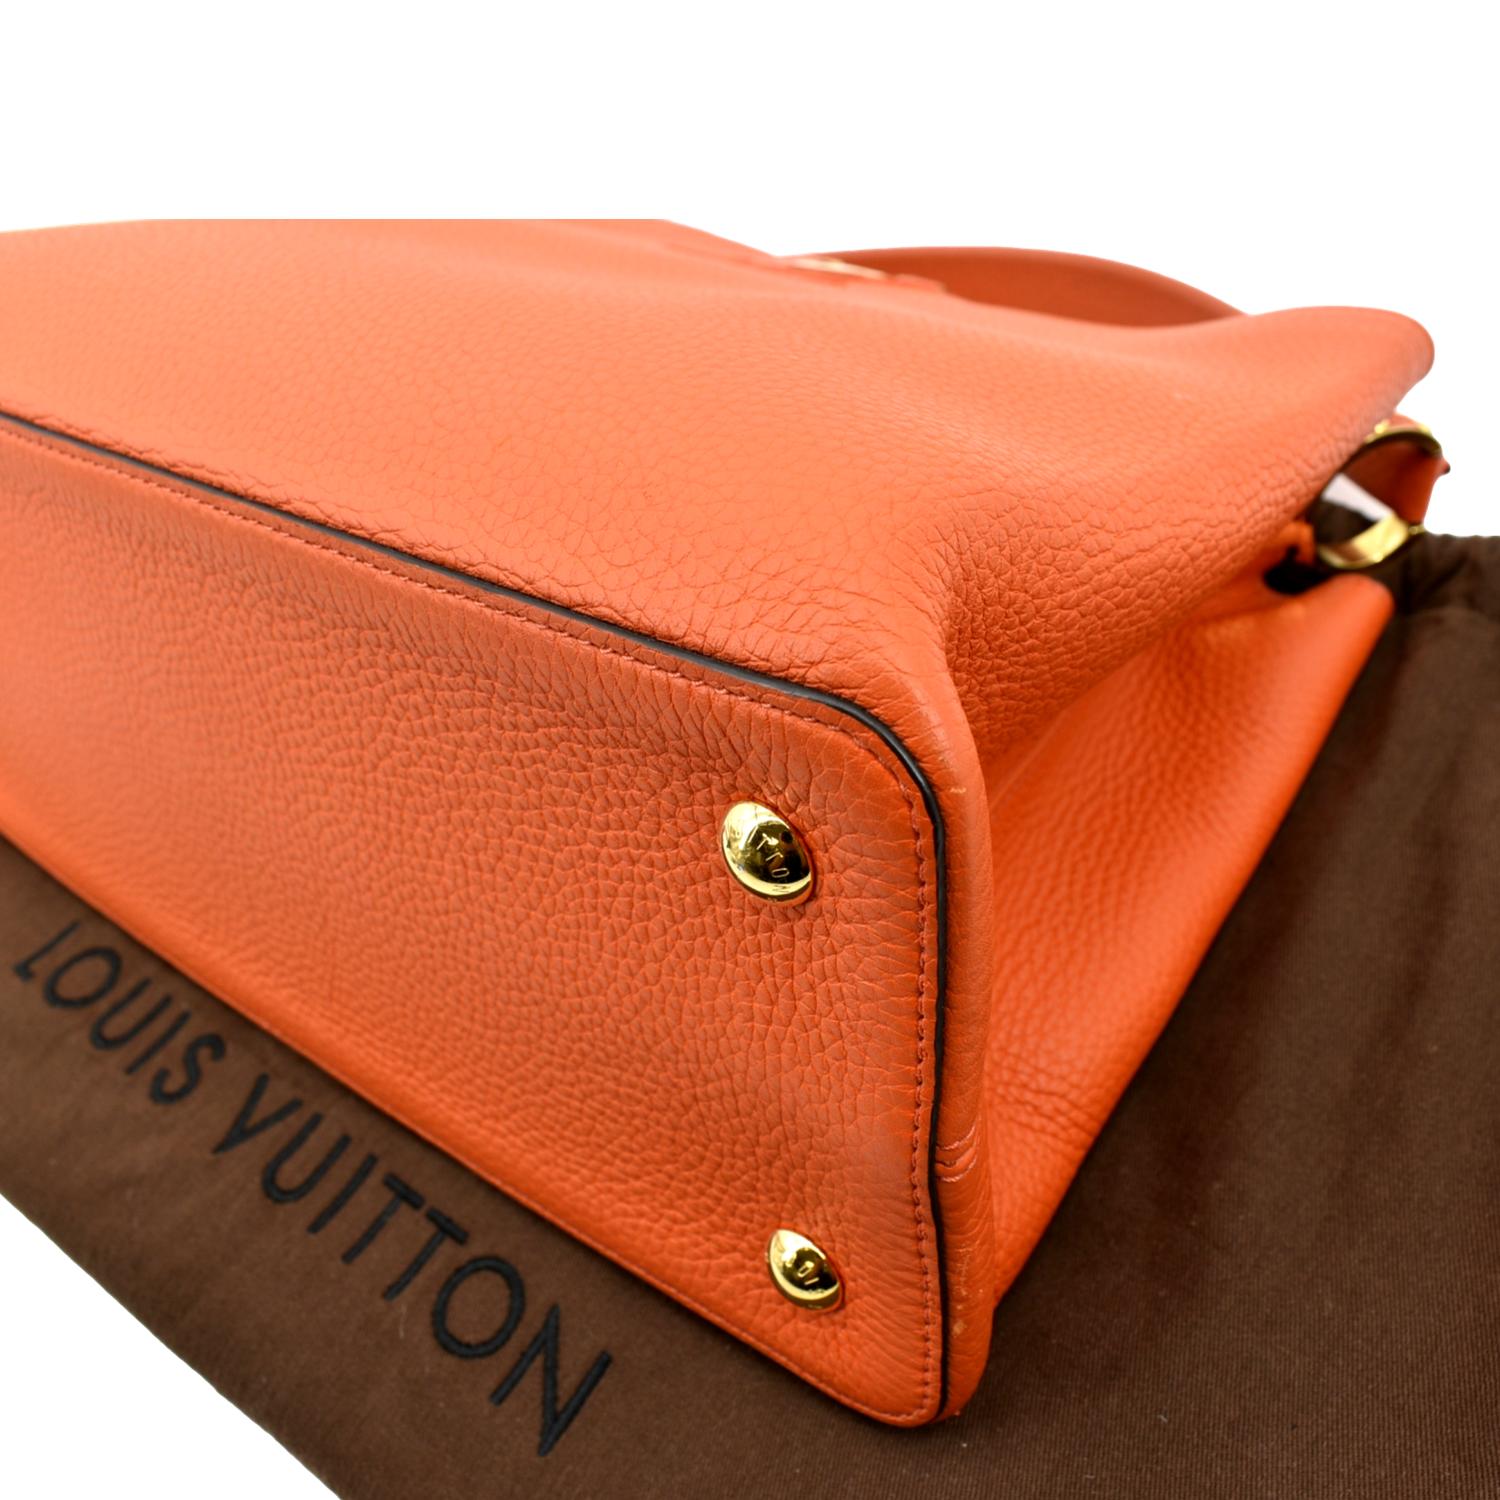 Capucines leather handbag Louis Vuitton Orange in Leather - 30785094